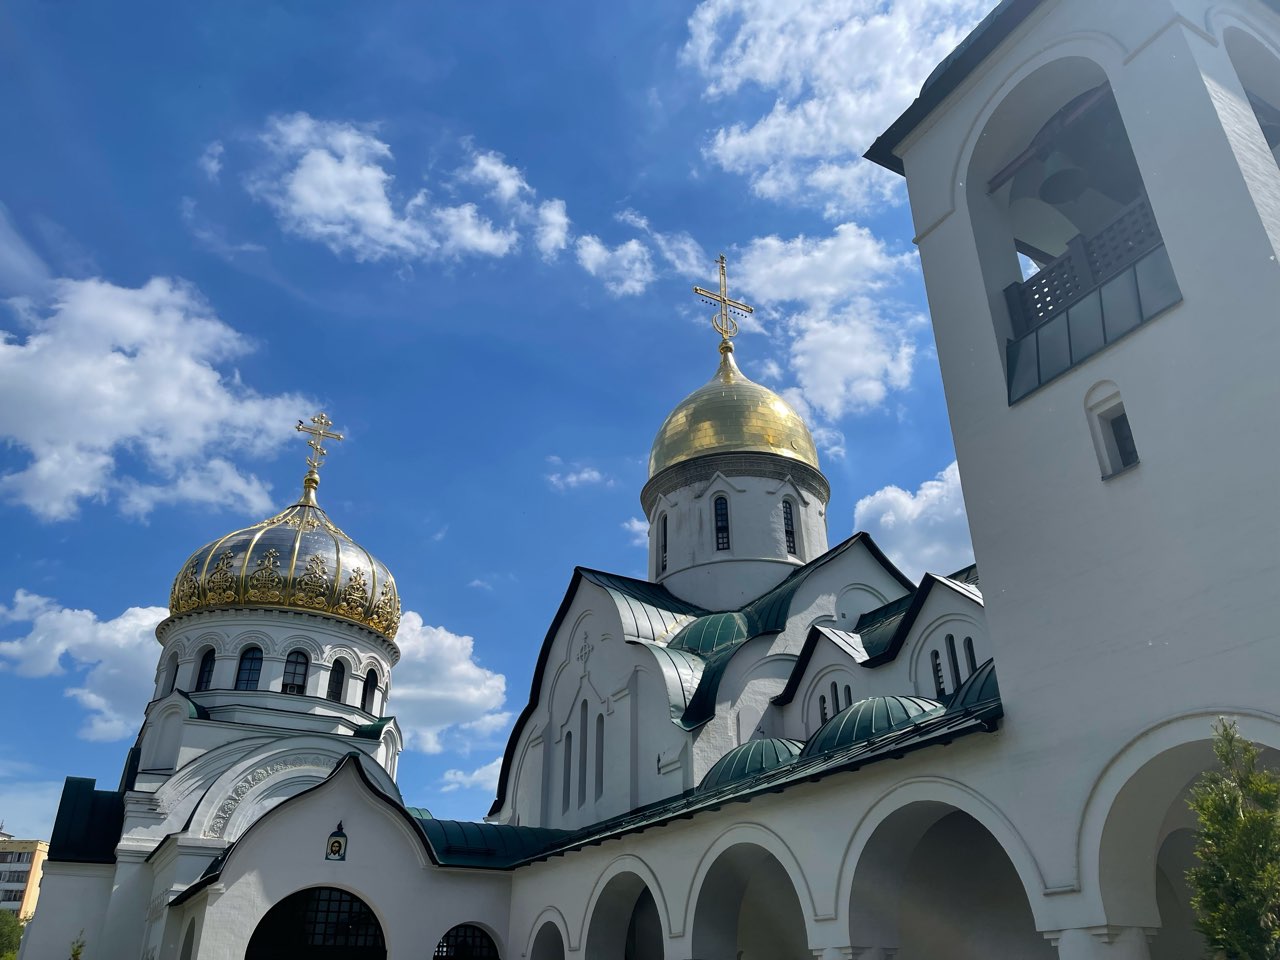 Храм планируют построить на территории больницы им. Семашко в Нижнем Новгороде  - фото 1